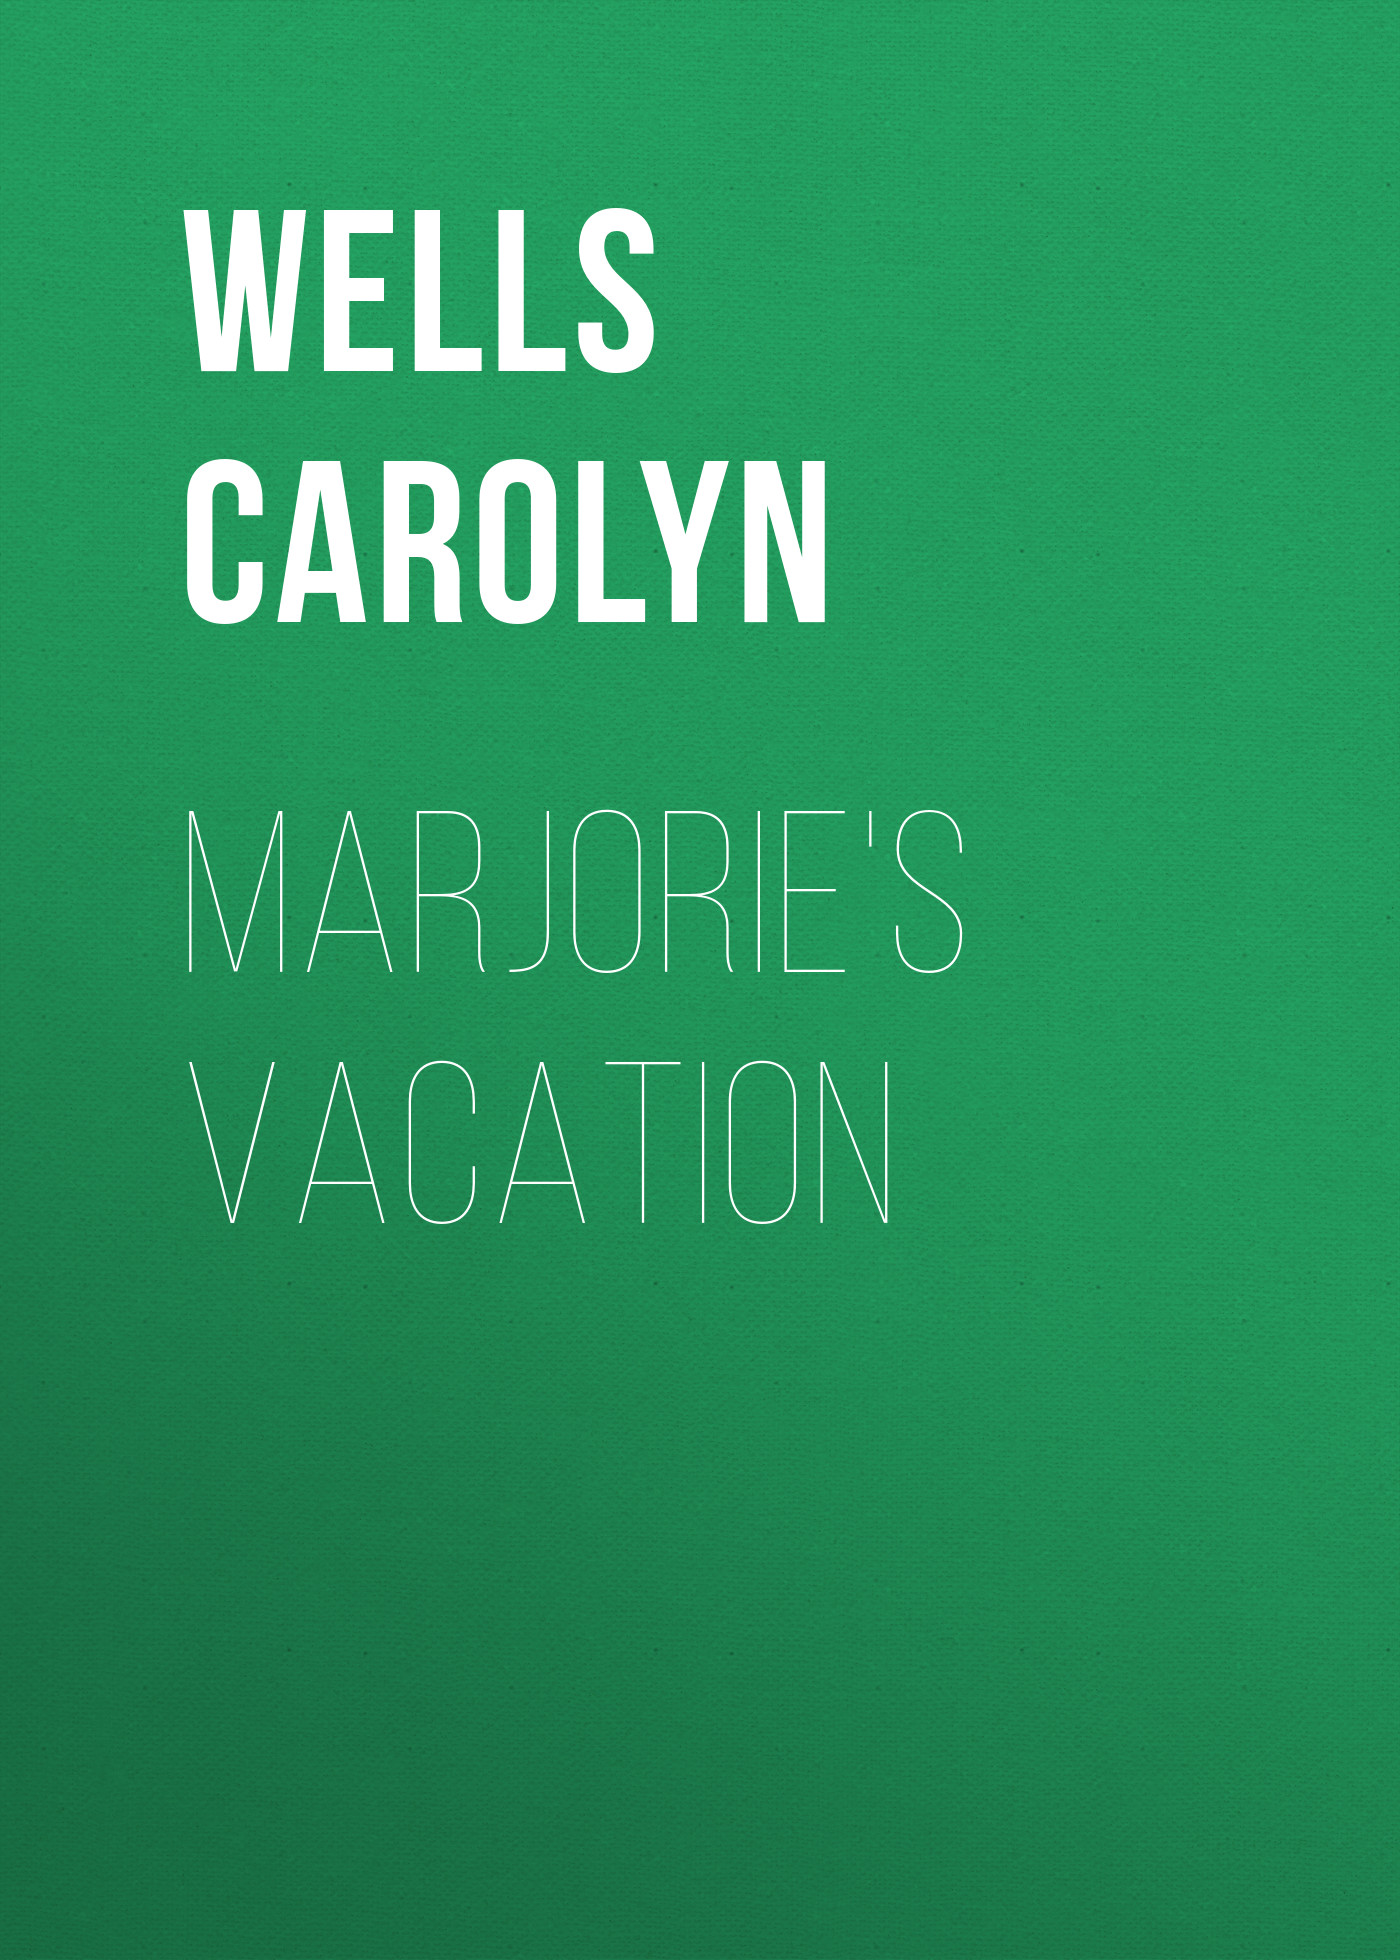 Книга Marjorie's Vacation из серии , созданная Carolyn Wells, может относится к жанру Зарубежные детские книги, Зарубежная старинная литература, Зарубежная классика. Стоимость электронной книги Marjorie's Vacation с идентификатором 36323364 составляет 0 руб.